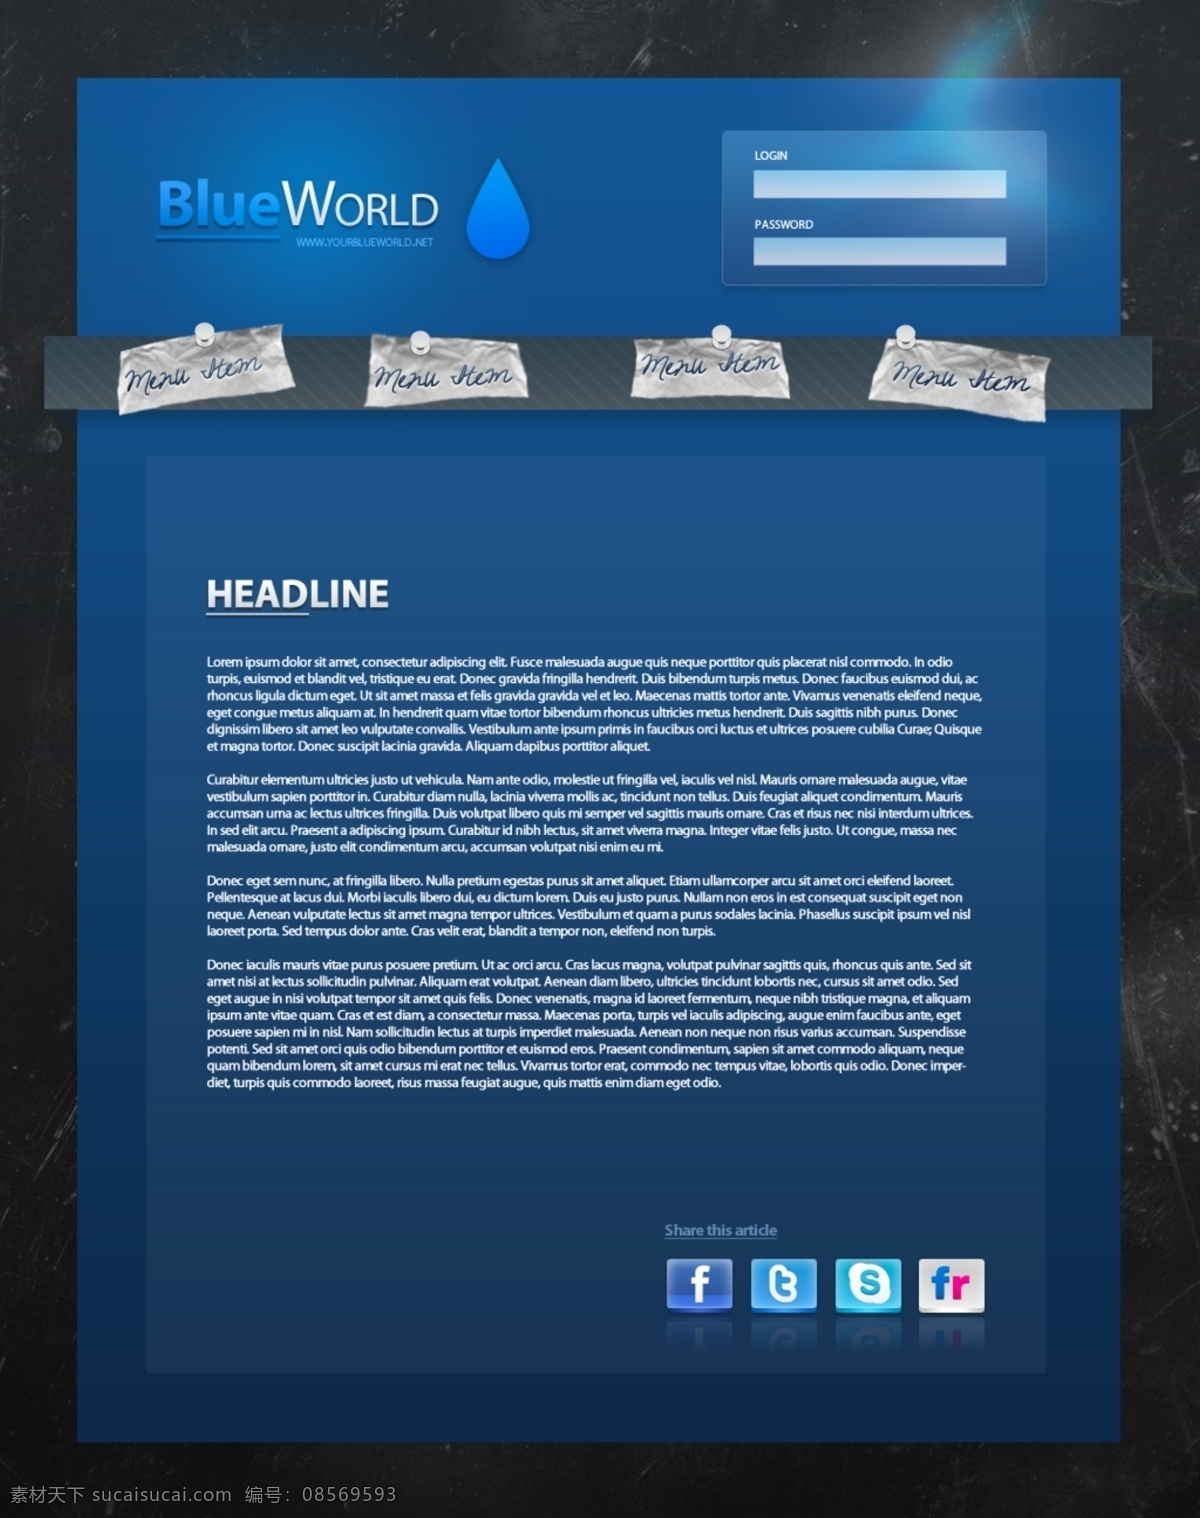 web 简洁 蓝色 蓝色世界 欧美模板 水滴 网页 网页模板 世界 质感 网站首页 模板下载 首页 blue 纸片 源文件 psd源文件